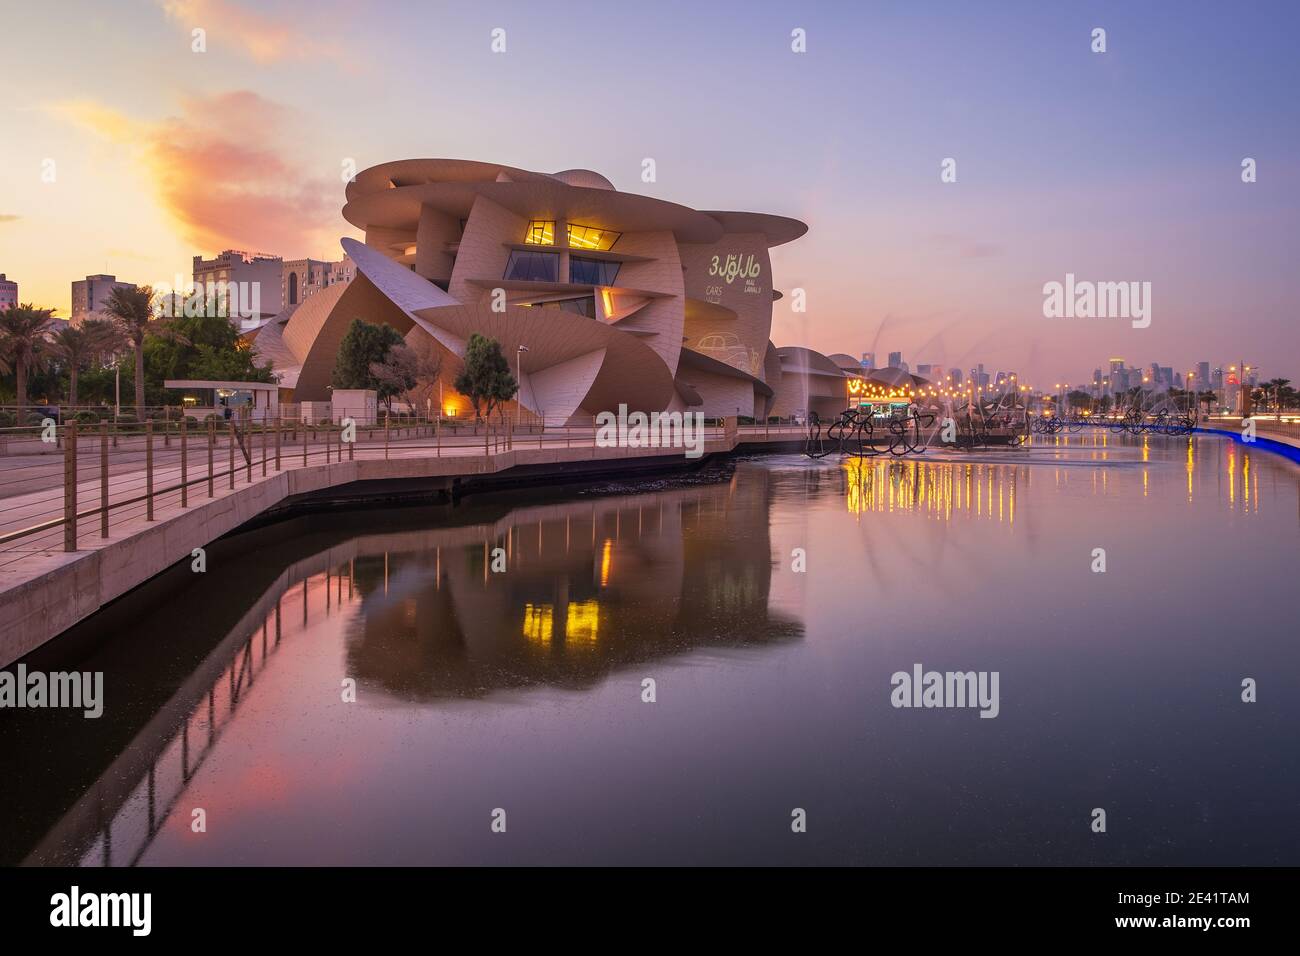 Schöne Aussicht auf Katar National Museum während des Sonnenuntergangs Stockfoto